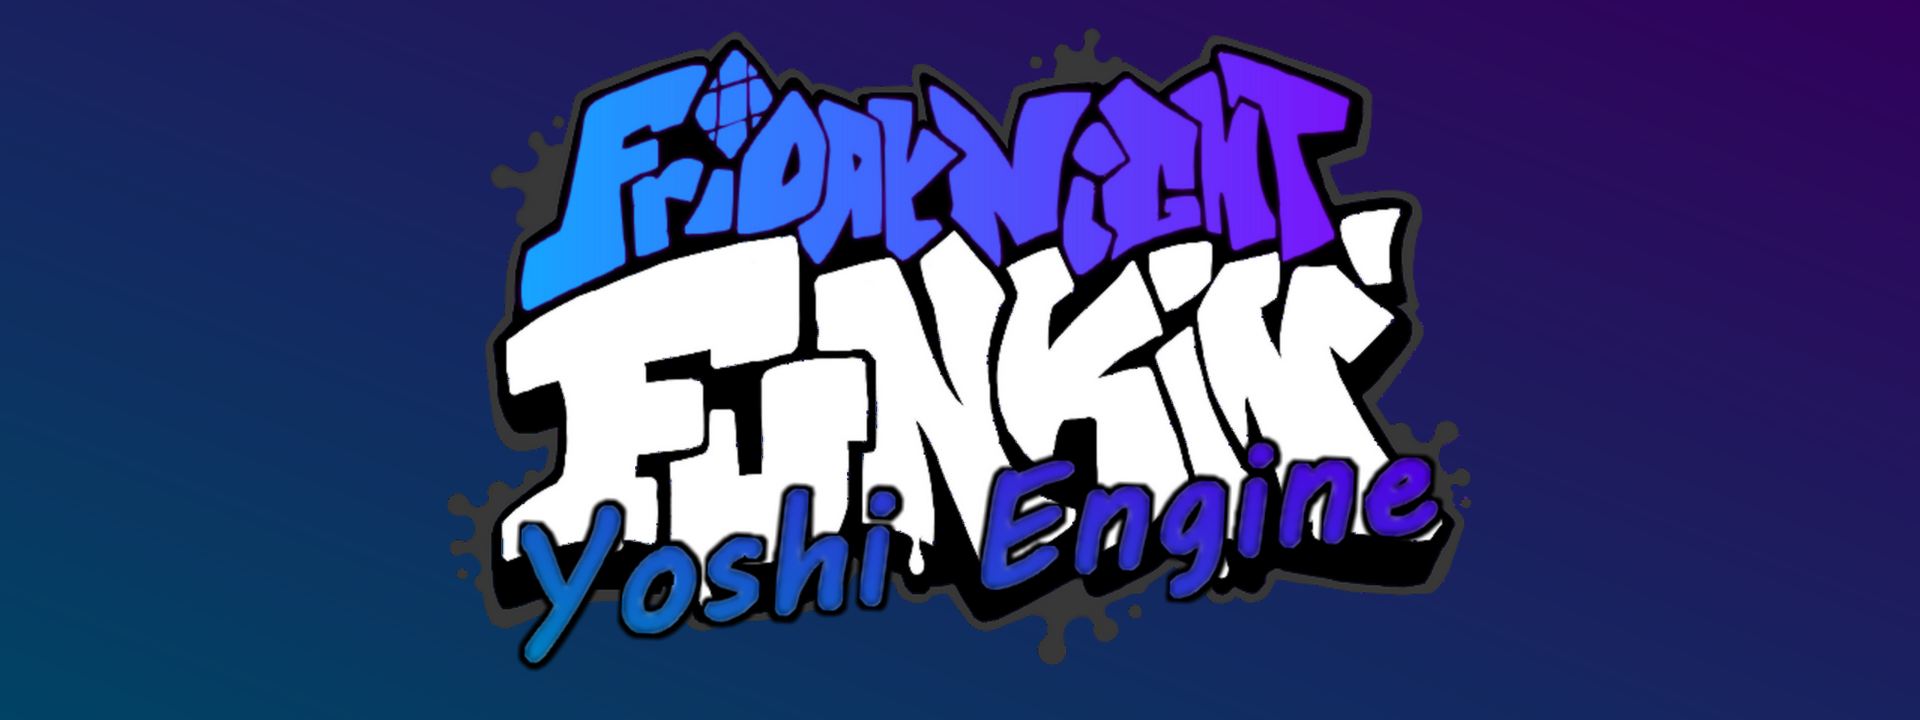 FNF vs Yoshi FNF mod jogo online, pc baixar